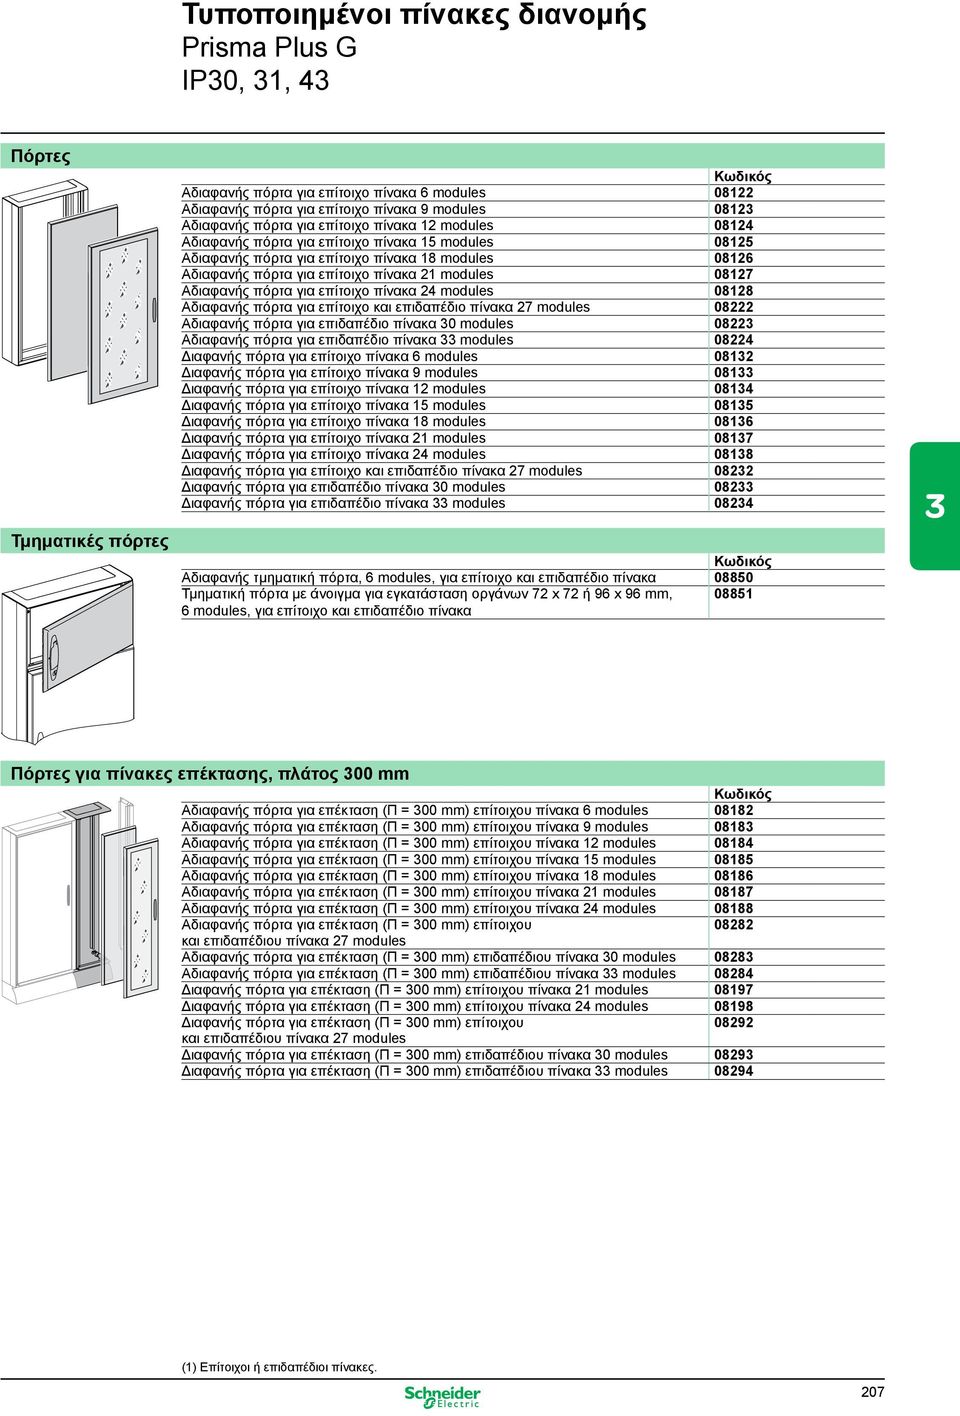 08127 Αδιαφανής πόρτα για επίτοιχο πίνακα 24 modules 08128 Αδιαφανής πόρτα για επίτοιχο και επιδαπέδιο πίνακα 27 modules 08222 Αδιαφανής πόρτα για επιδαπέδιο πίνακα 30 modules 08223 Αδιαφανής πόρτα